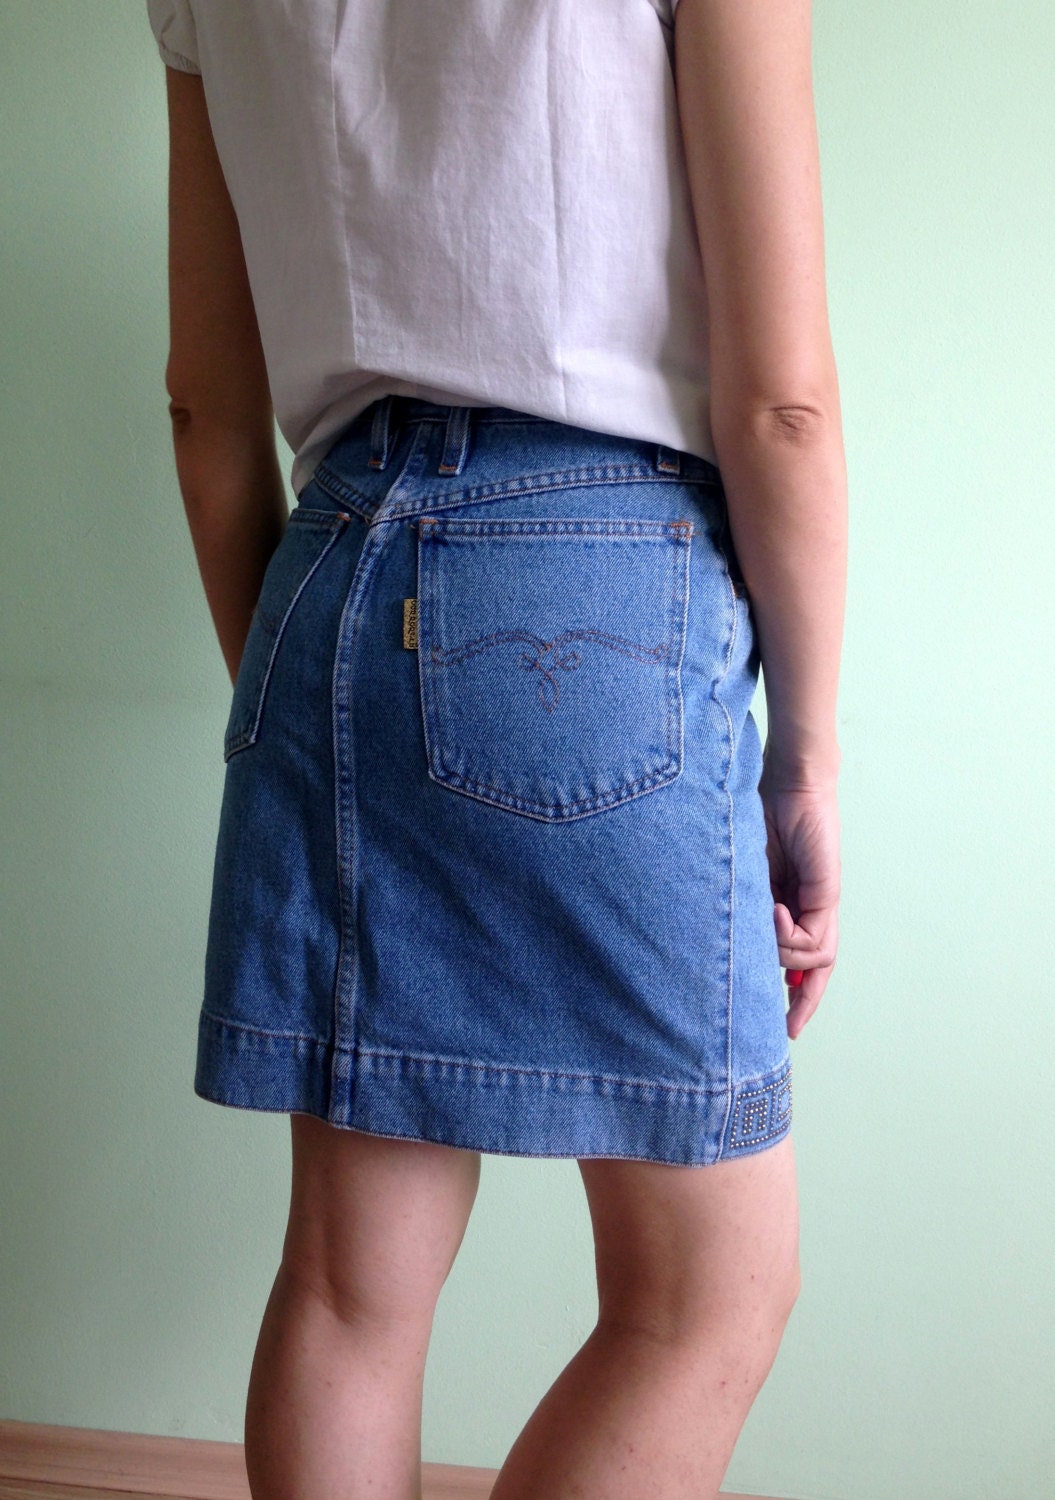 Denim Skirt High Waisted Skirt Size Small 80s Pencil Skirt - Etsy